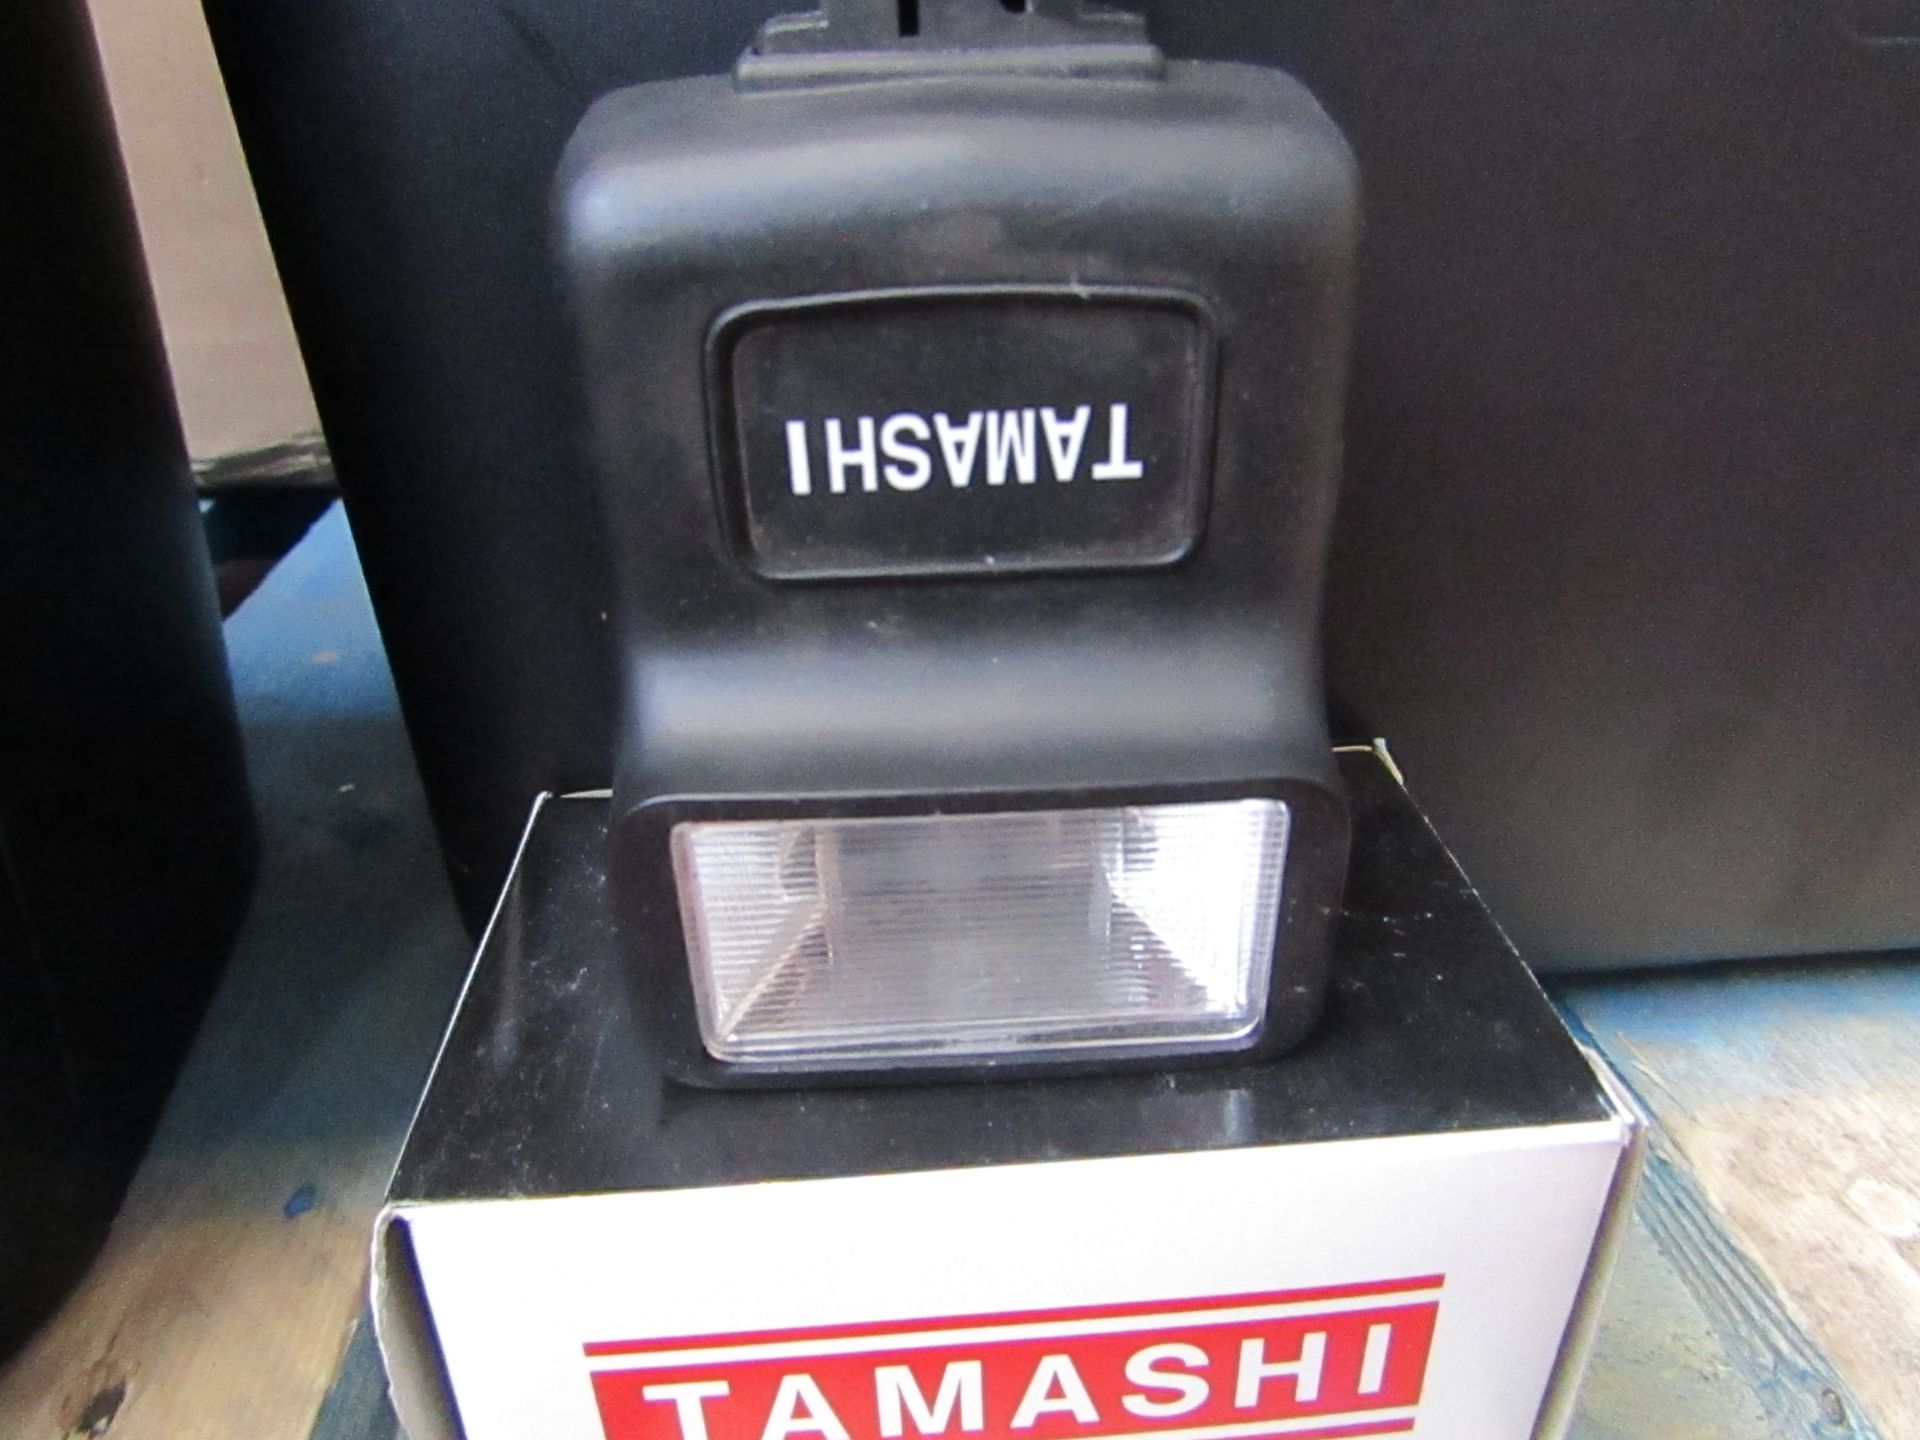 5X Tamashi electronic flashers, both untested and boxed.